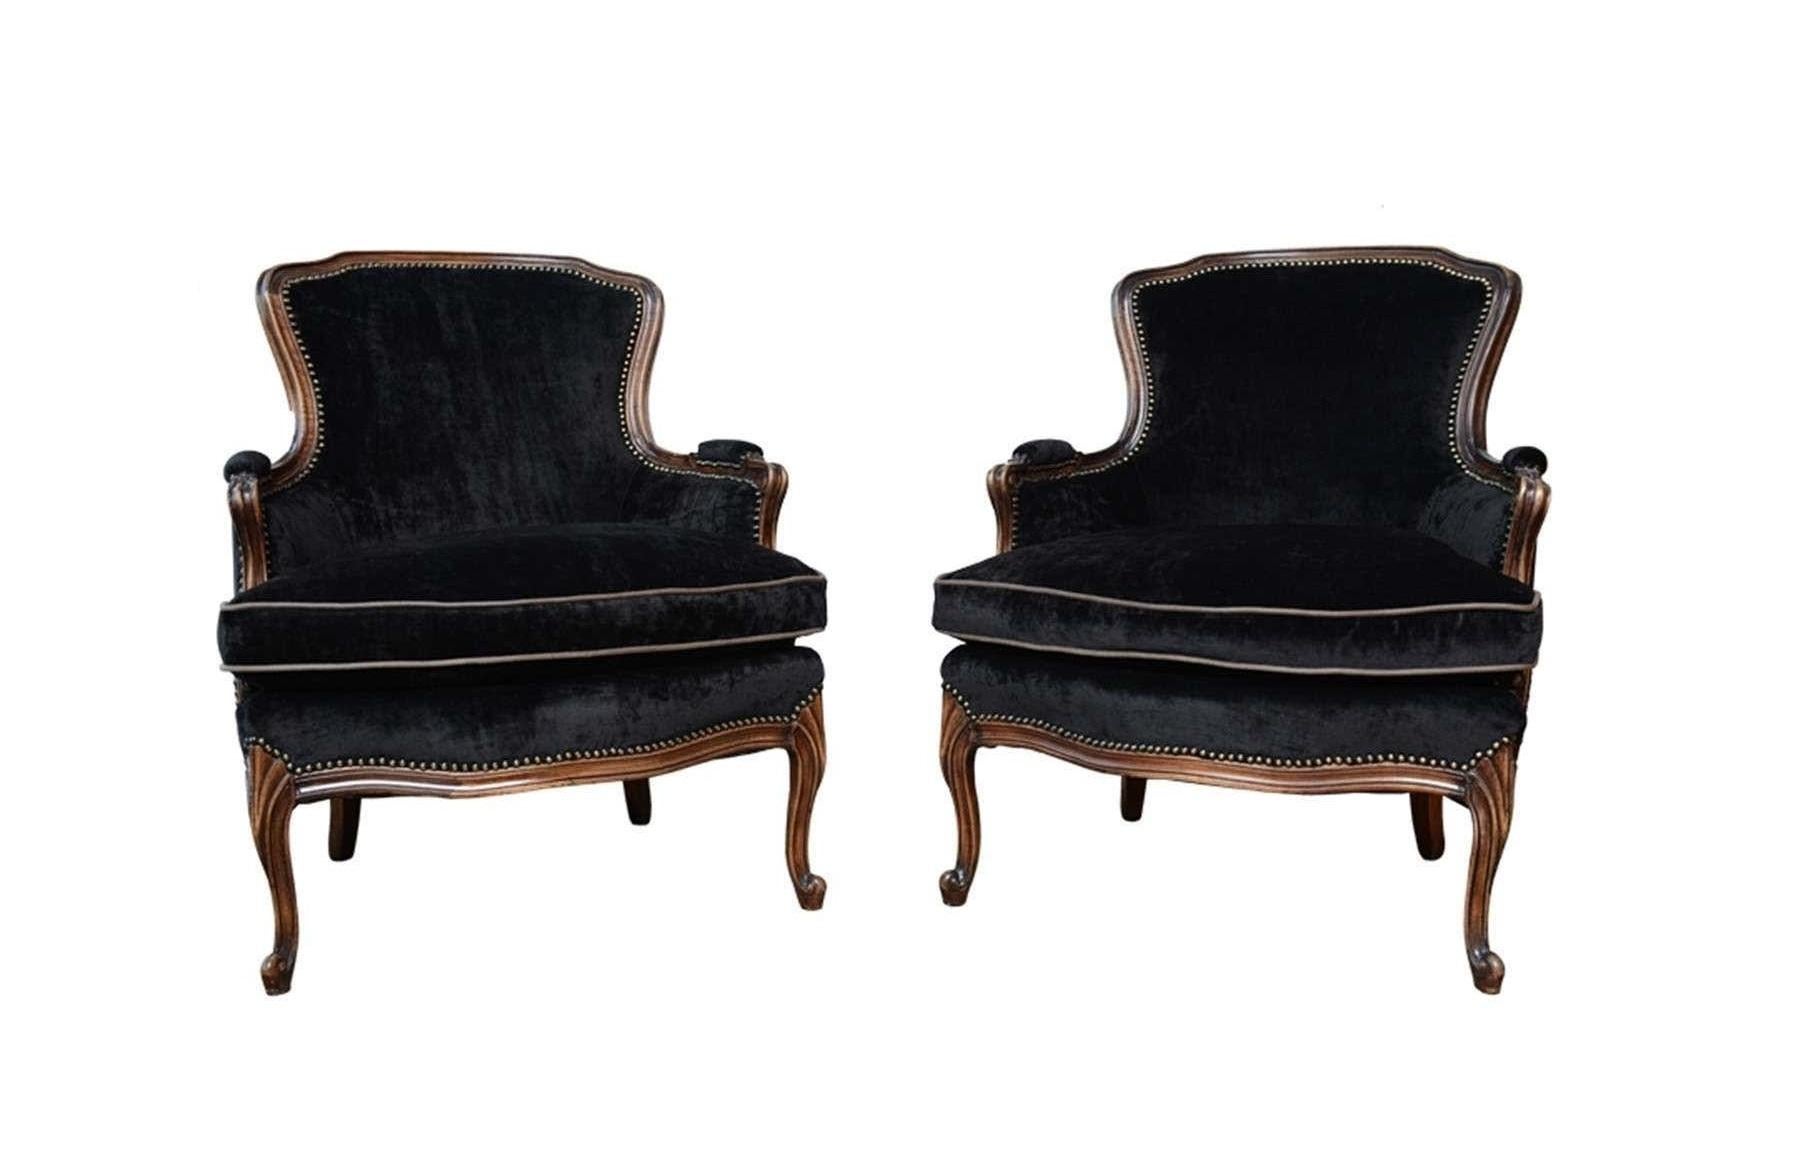 Ein elegantes Paar antiker, gepolsterter Louis XV-Sessel. Frisch gepolstert mit schwarzem Samt, mit Nagelkopfleisten an den Rändern und mit dunklem Walnuss-Finish am Rahmen. Die Stühle haben eine einfache geschwungene Kammschiene, eine gepolsterte